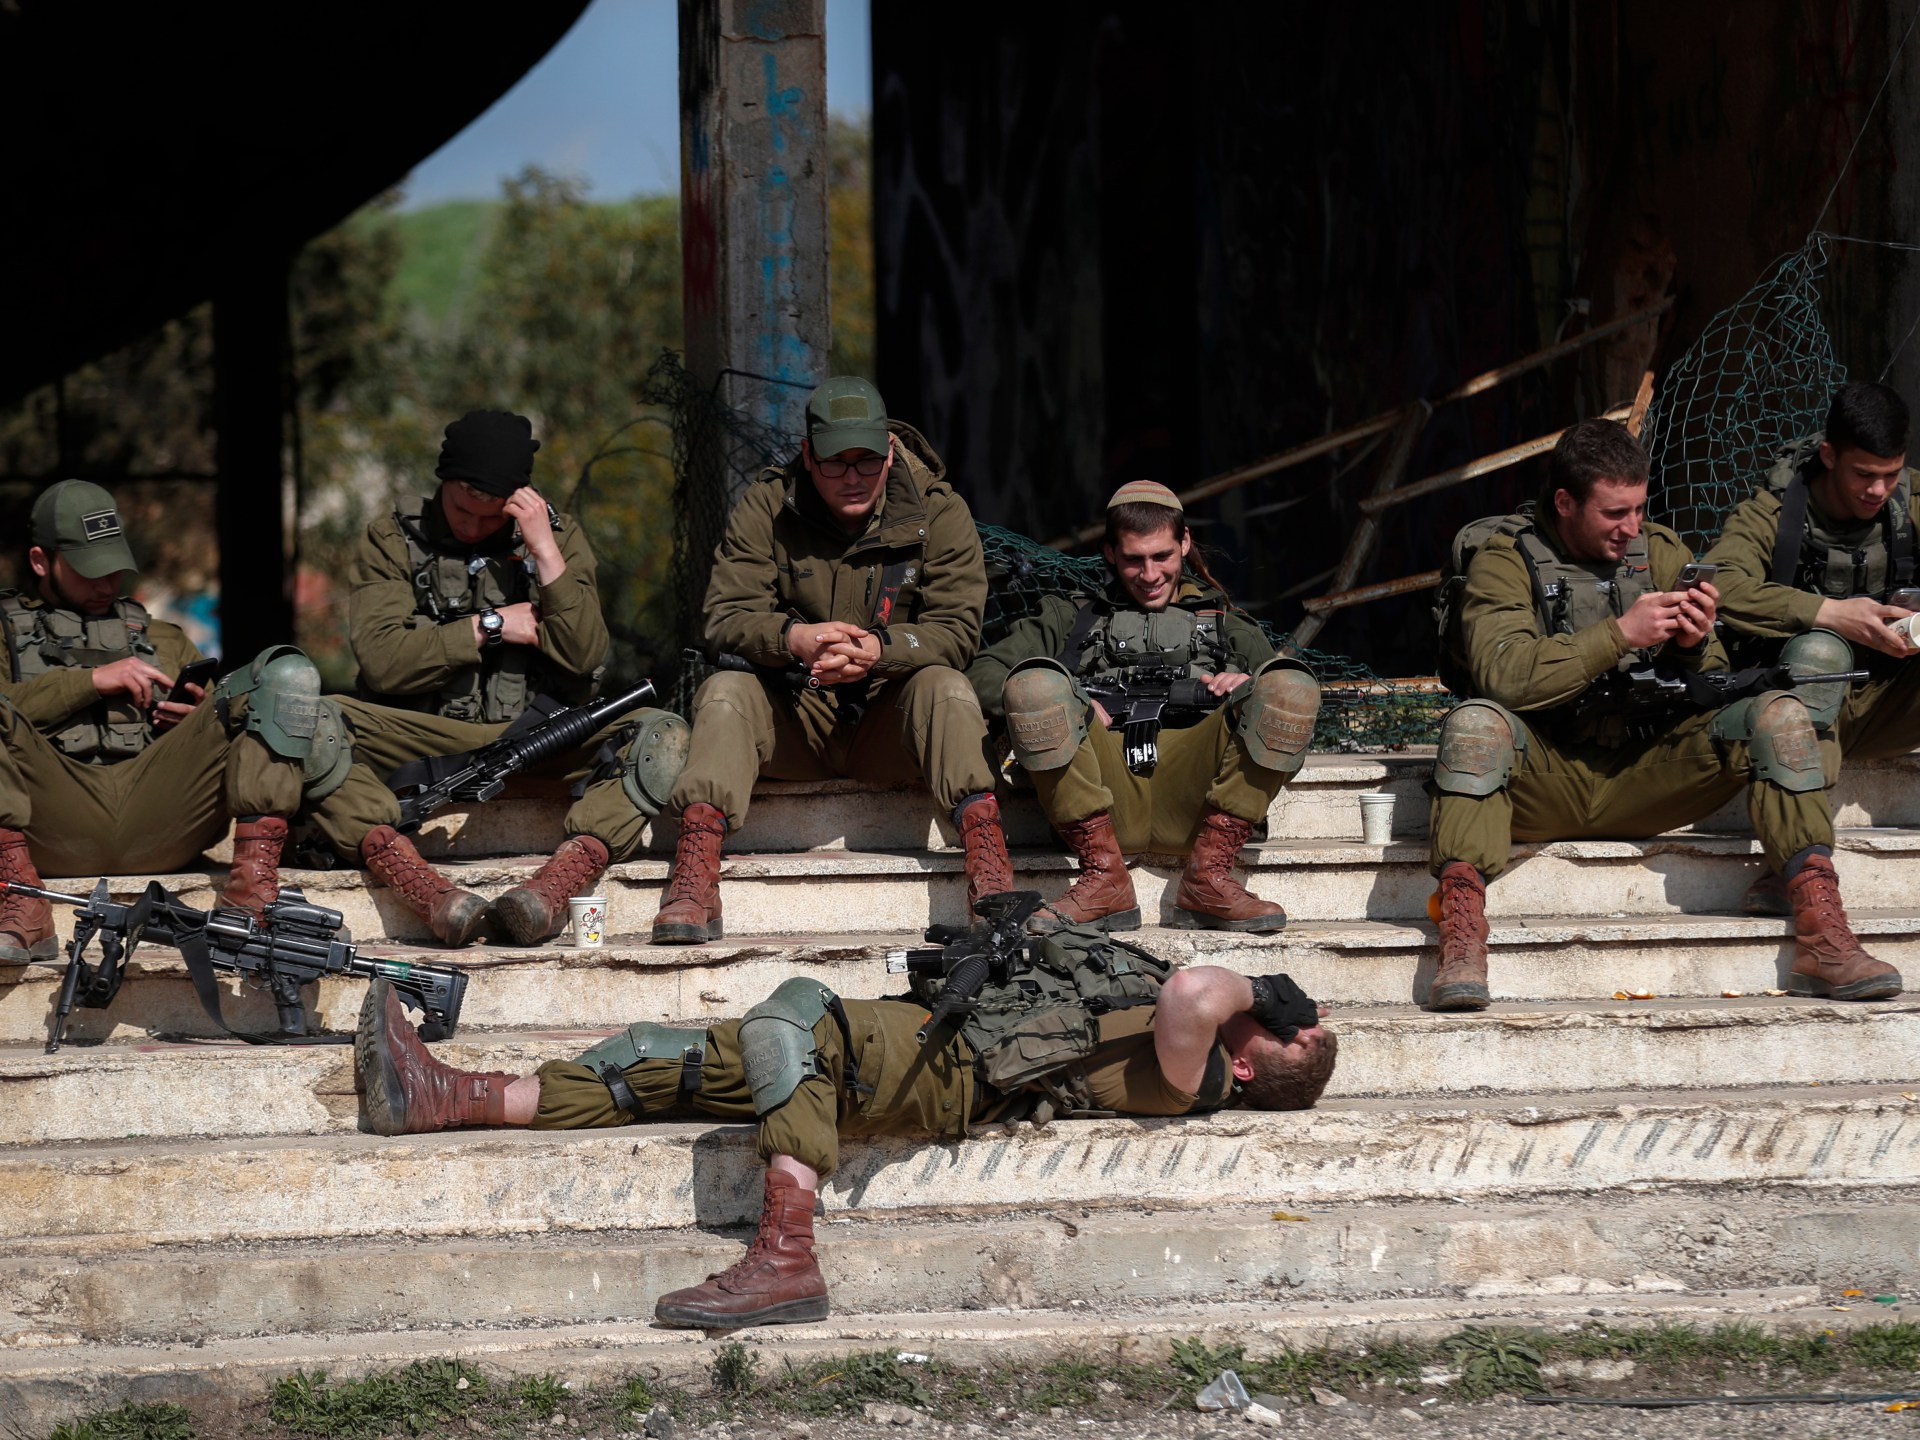 جيش الاحتلال: معدل مقتل الجنود بنيران صديقة أمر فظيع | أخبار – البوكس نيوز